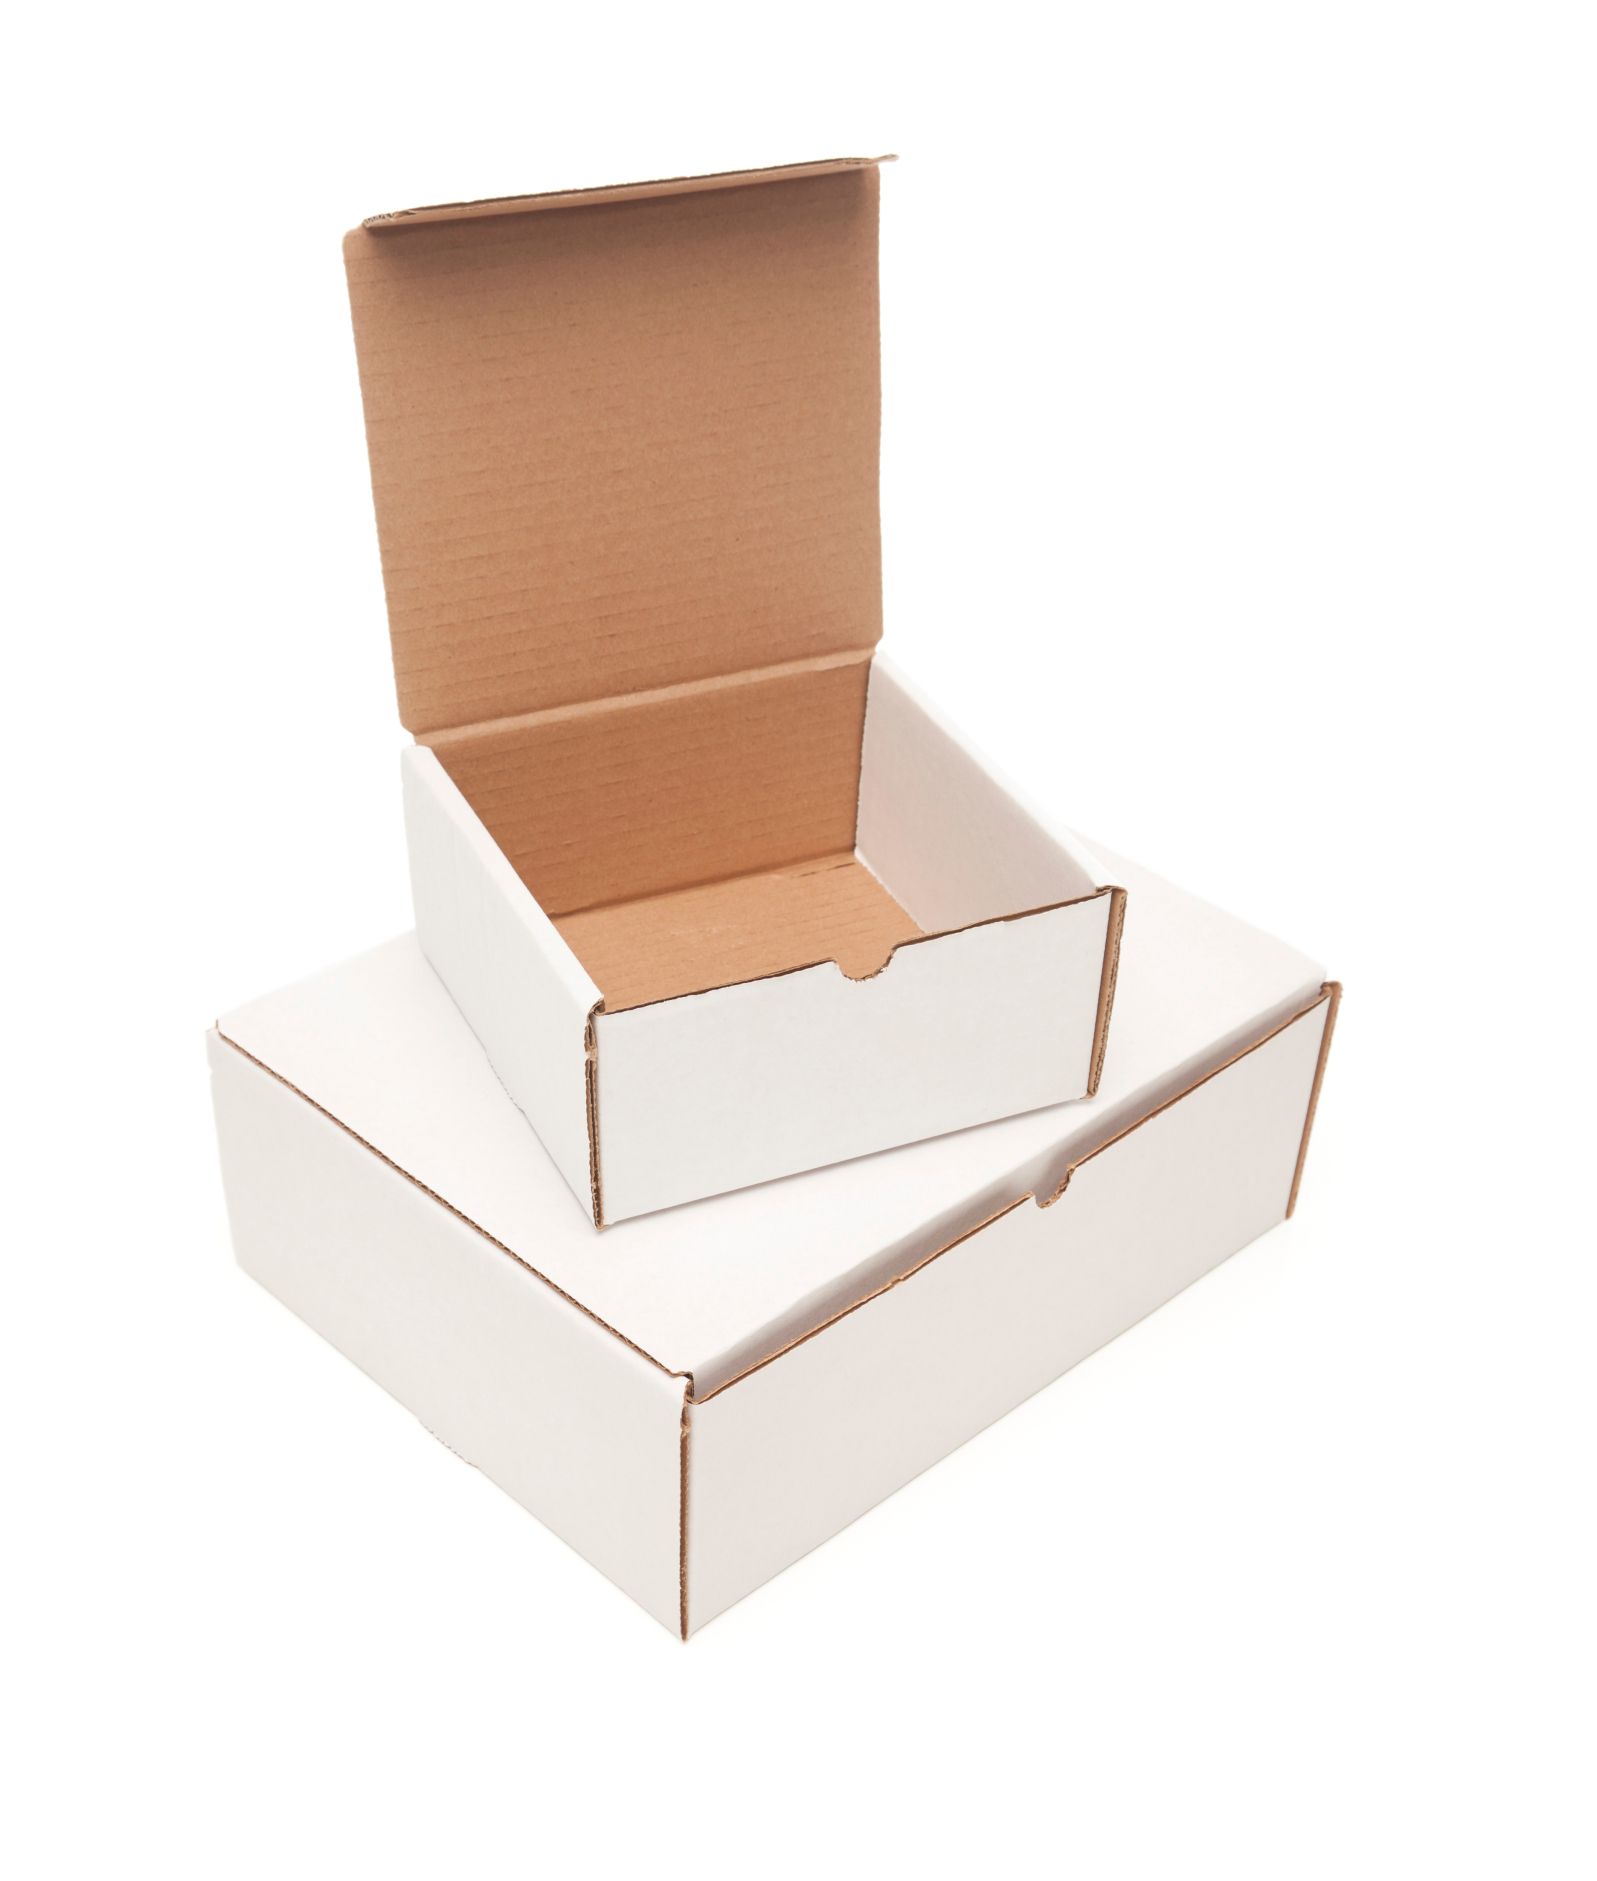 Conoce los beneficios de las cajas de cartón para tu negocio